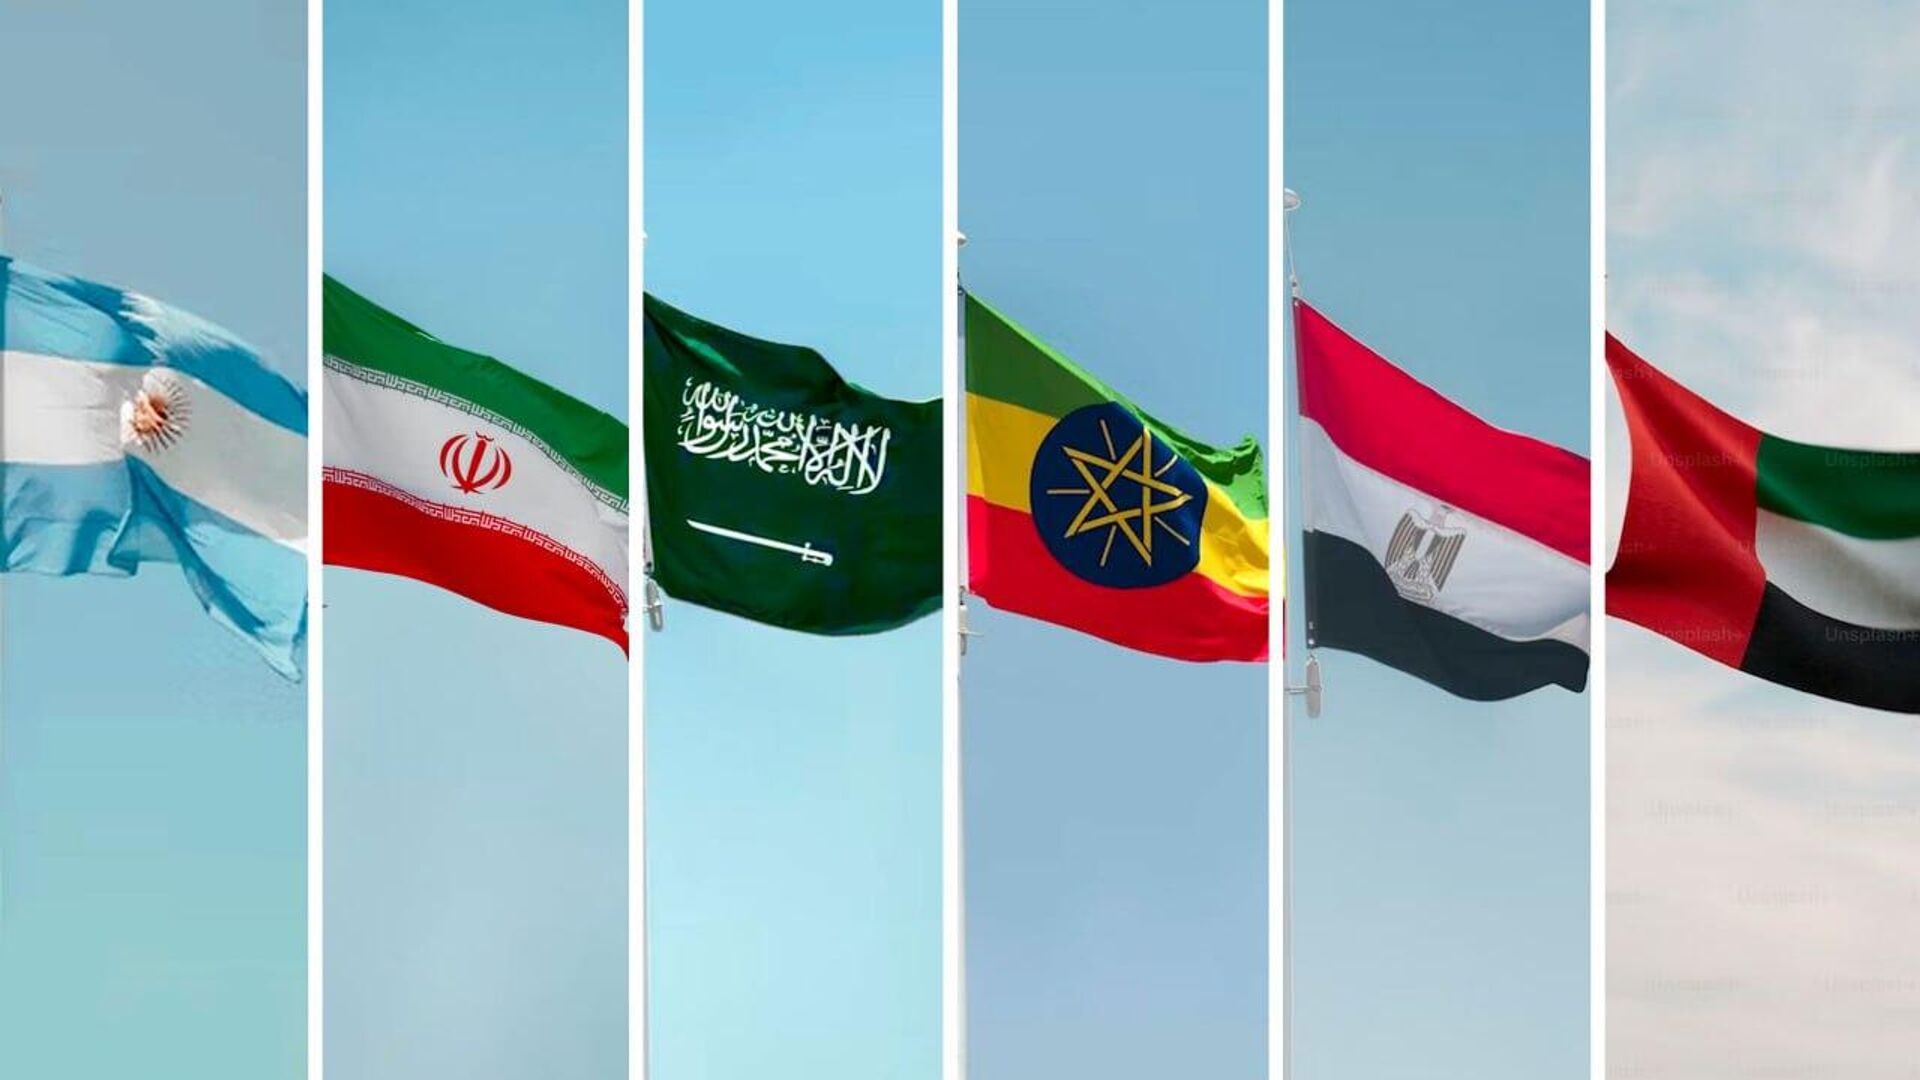 Bandeiras dos Países Africanos: você conhece todas elas?